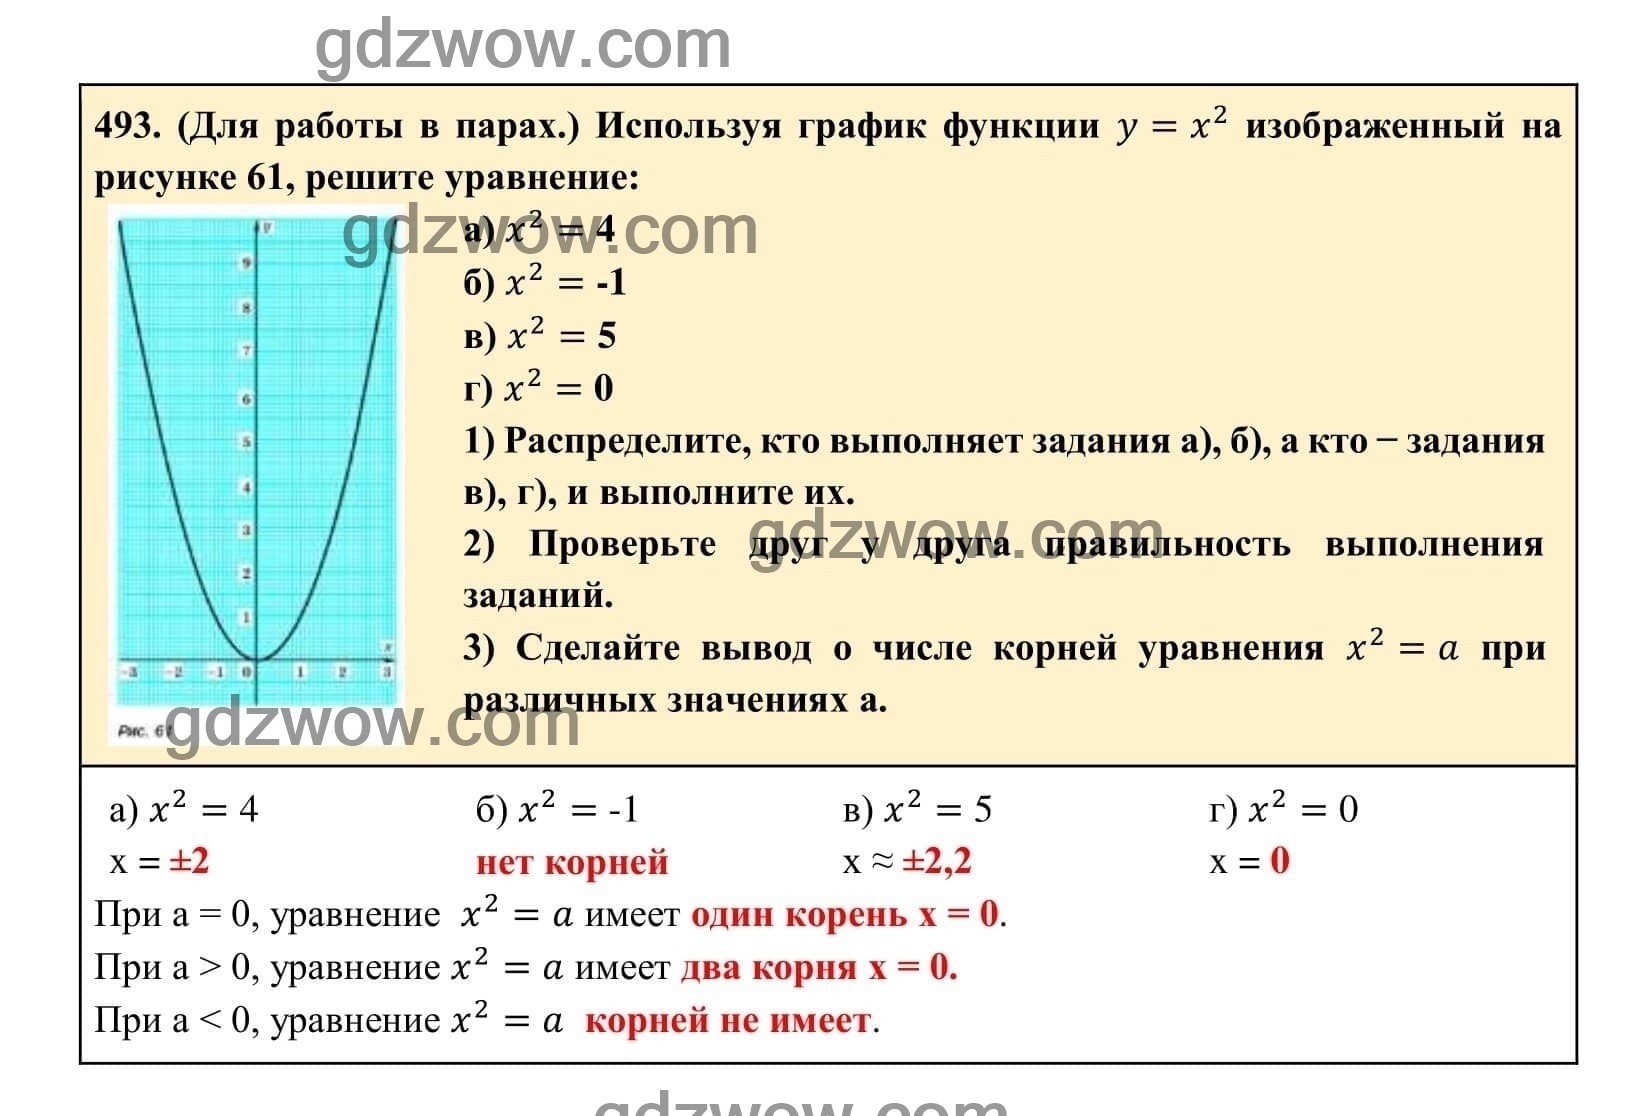 Упражнение 493 - ГДЗ по Алгебре 7 класс Учебник Макарычев (решебник) - GDZwow